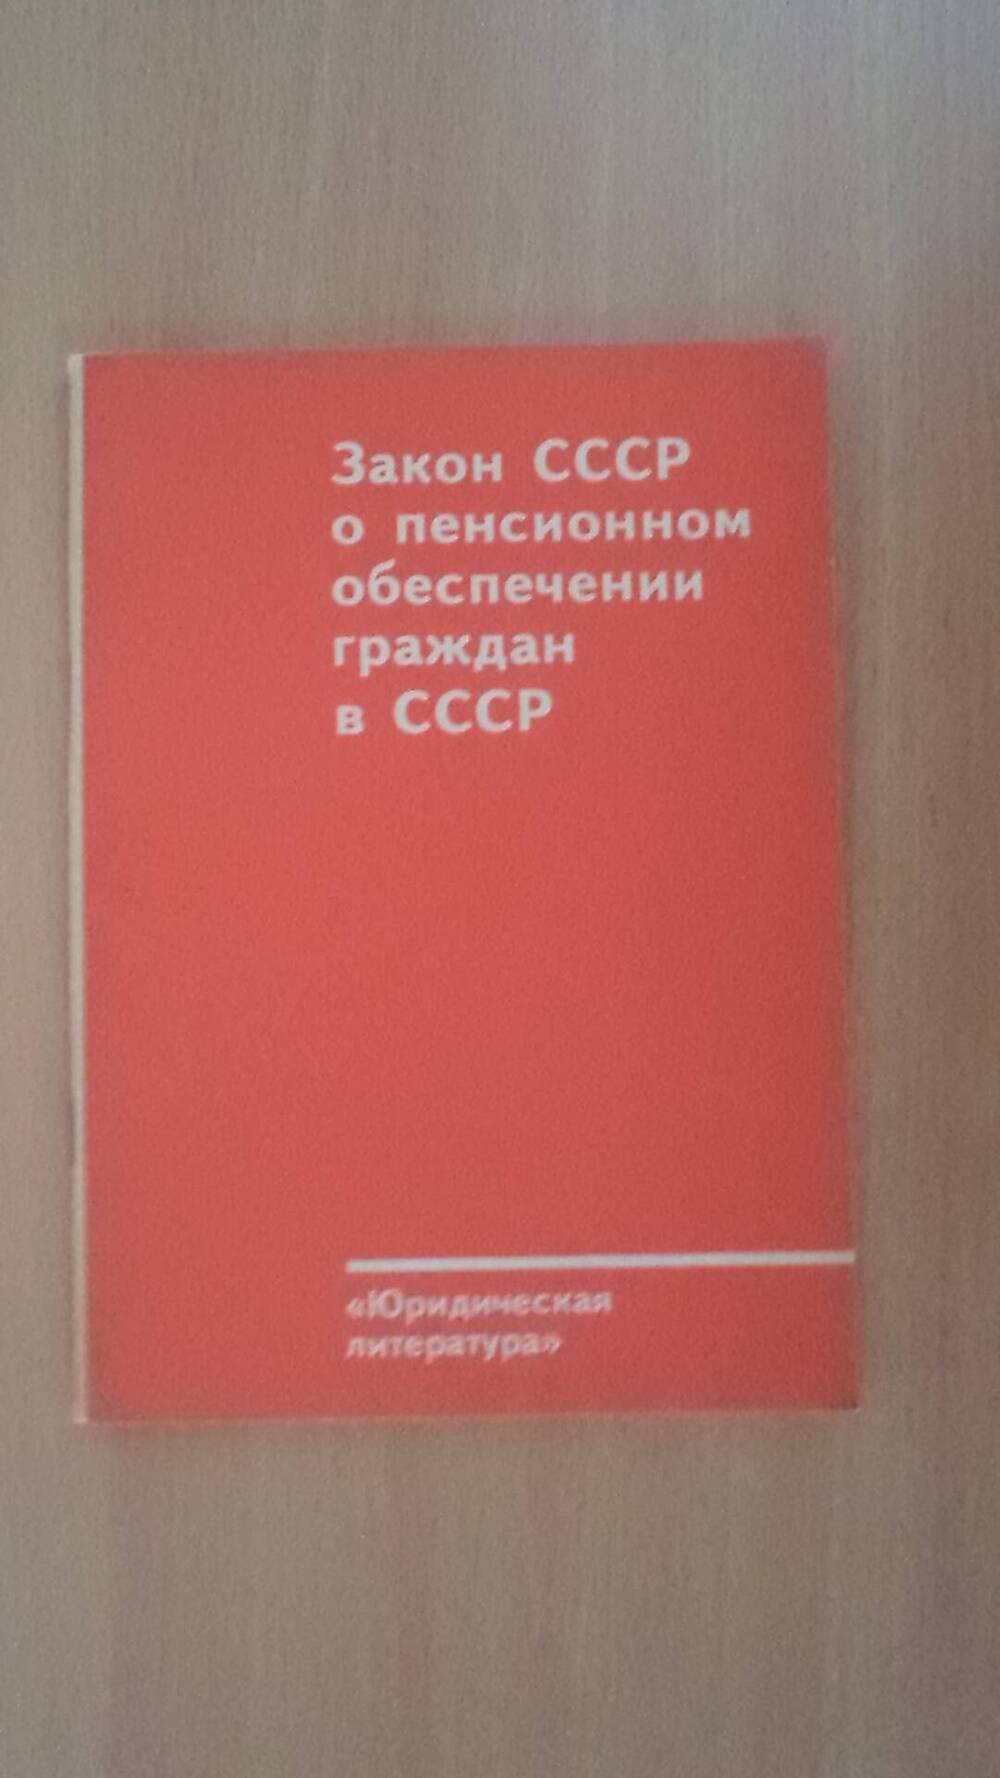 Брошюра Закон СССР о пенсионном обеспечении граждан в СССР